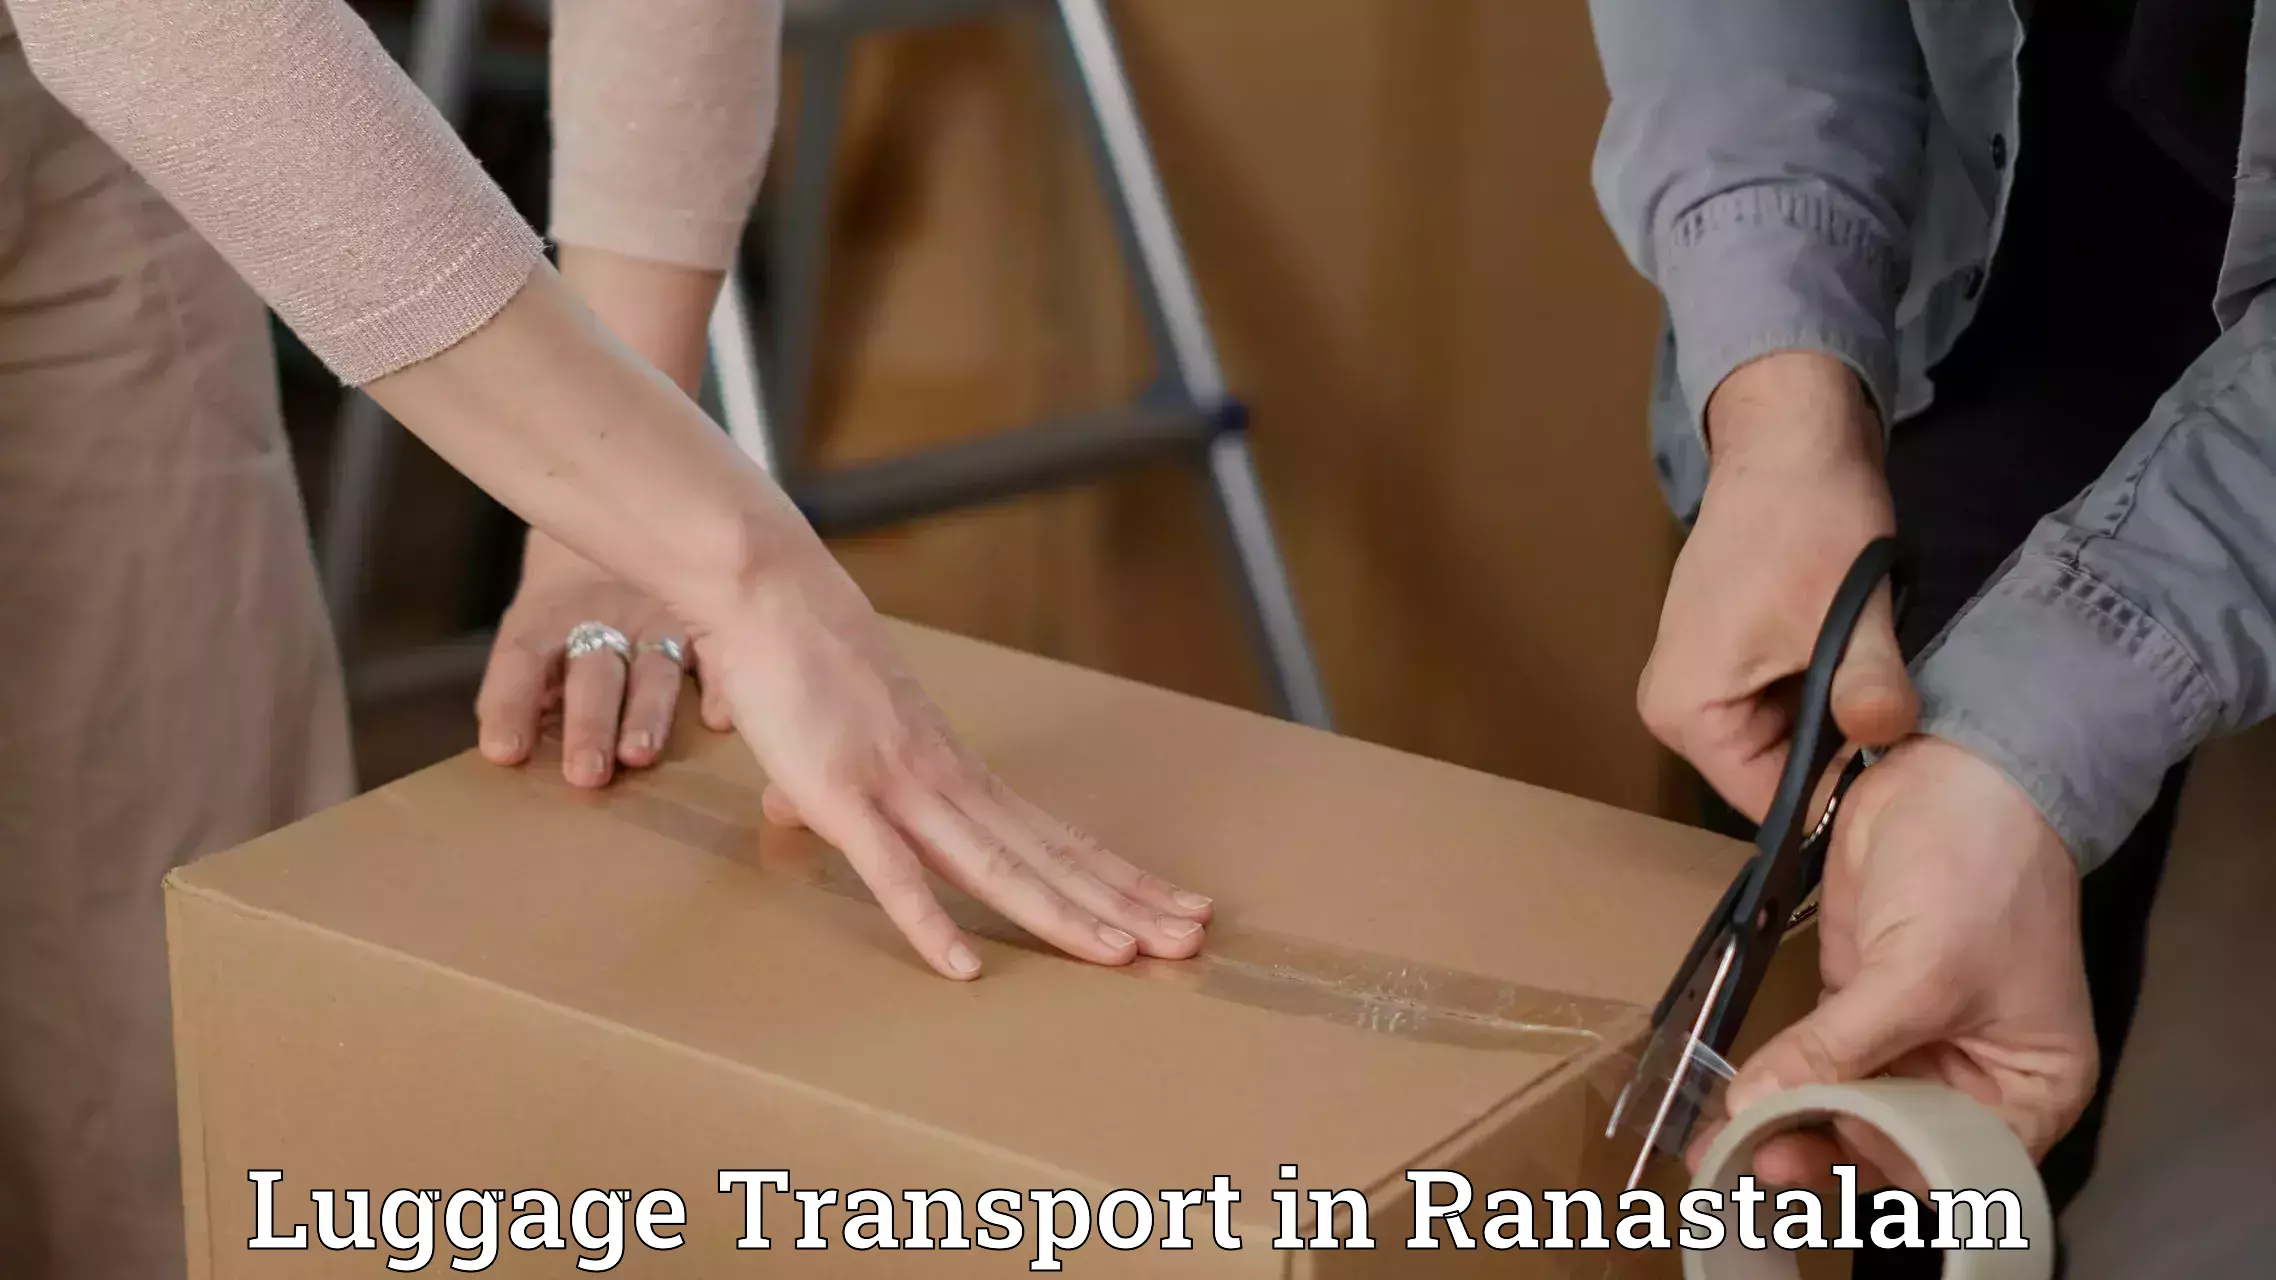 Baggage relocation service in Ranastalam